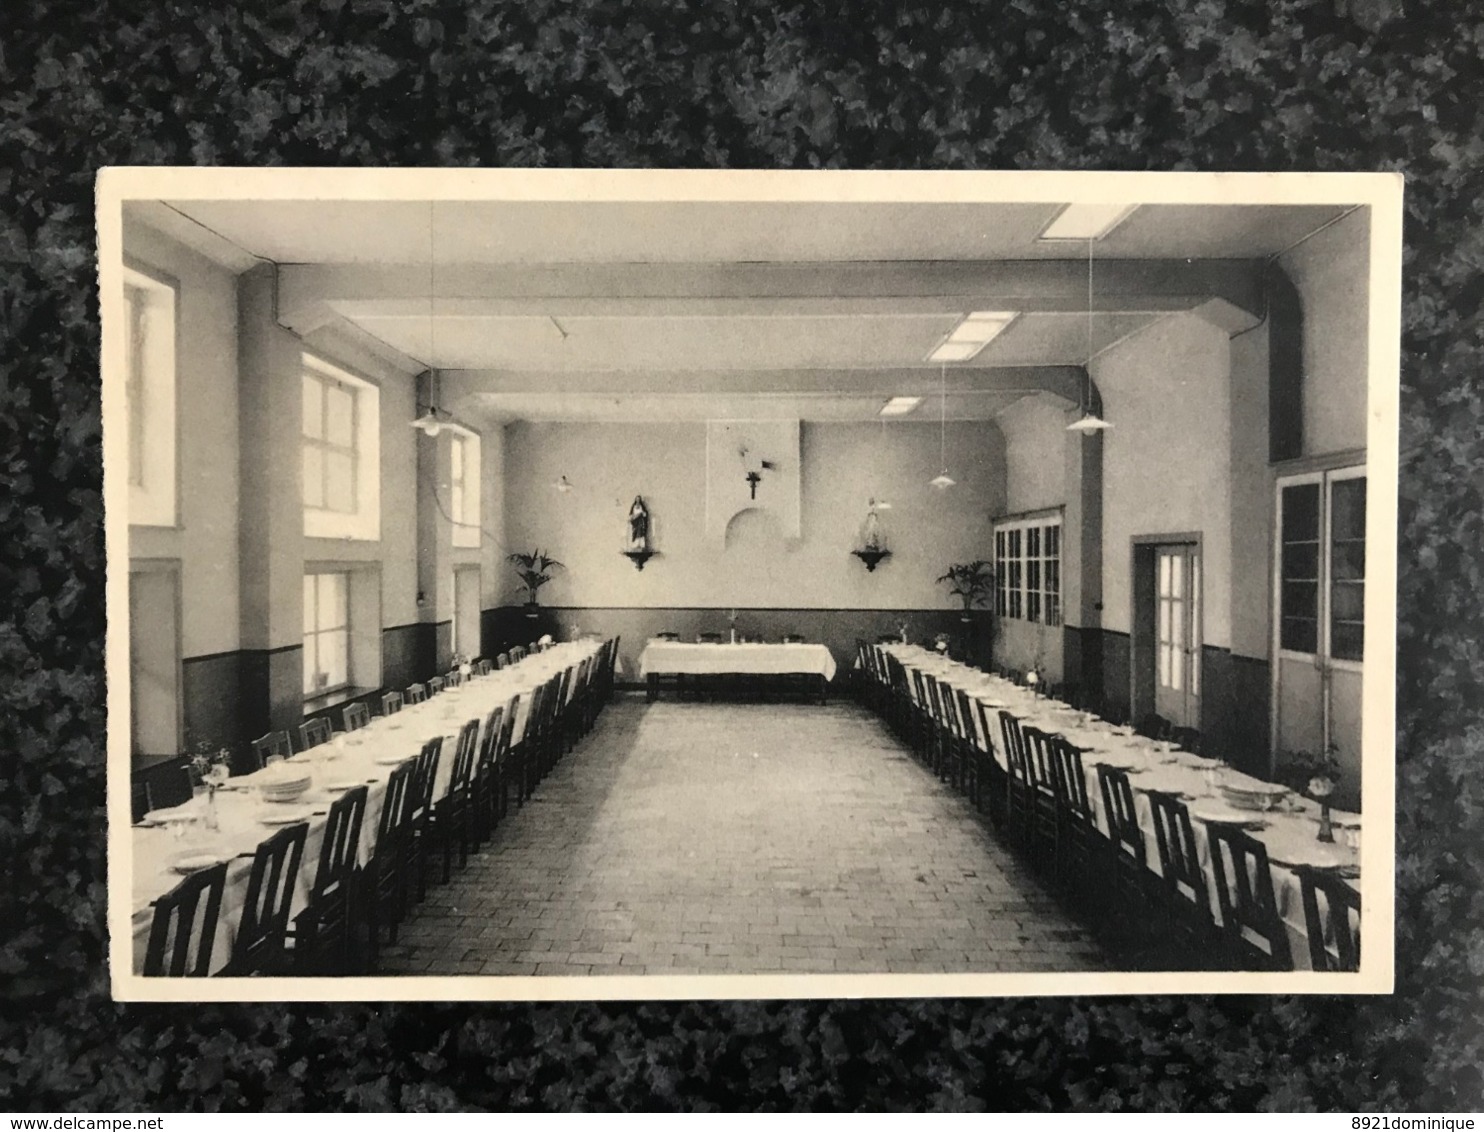 Thielt Tielt - St . Josephsschool - Beroepsschool * Eetplaats -gelopen 1938 - Tielt